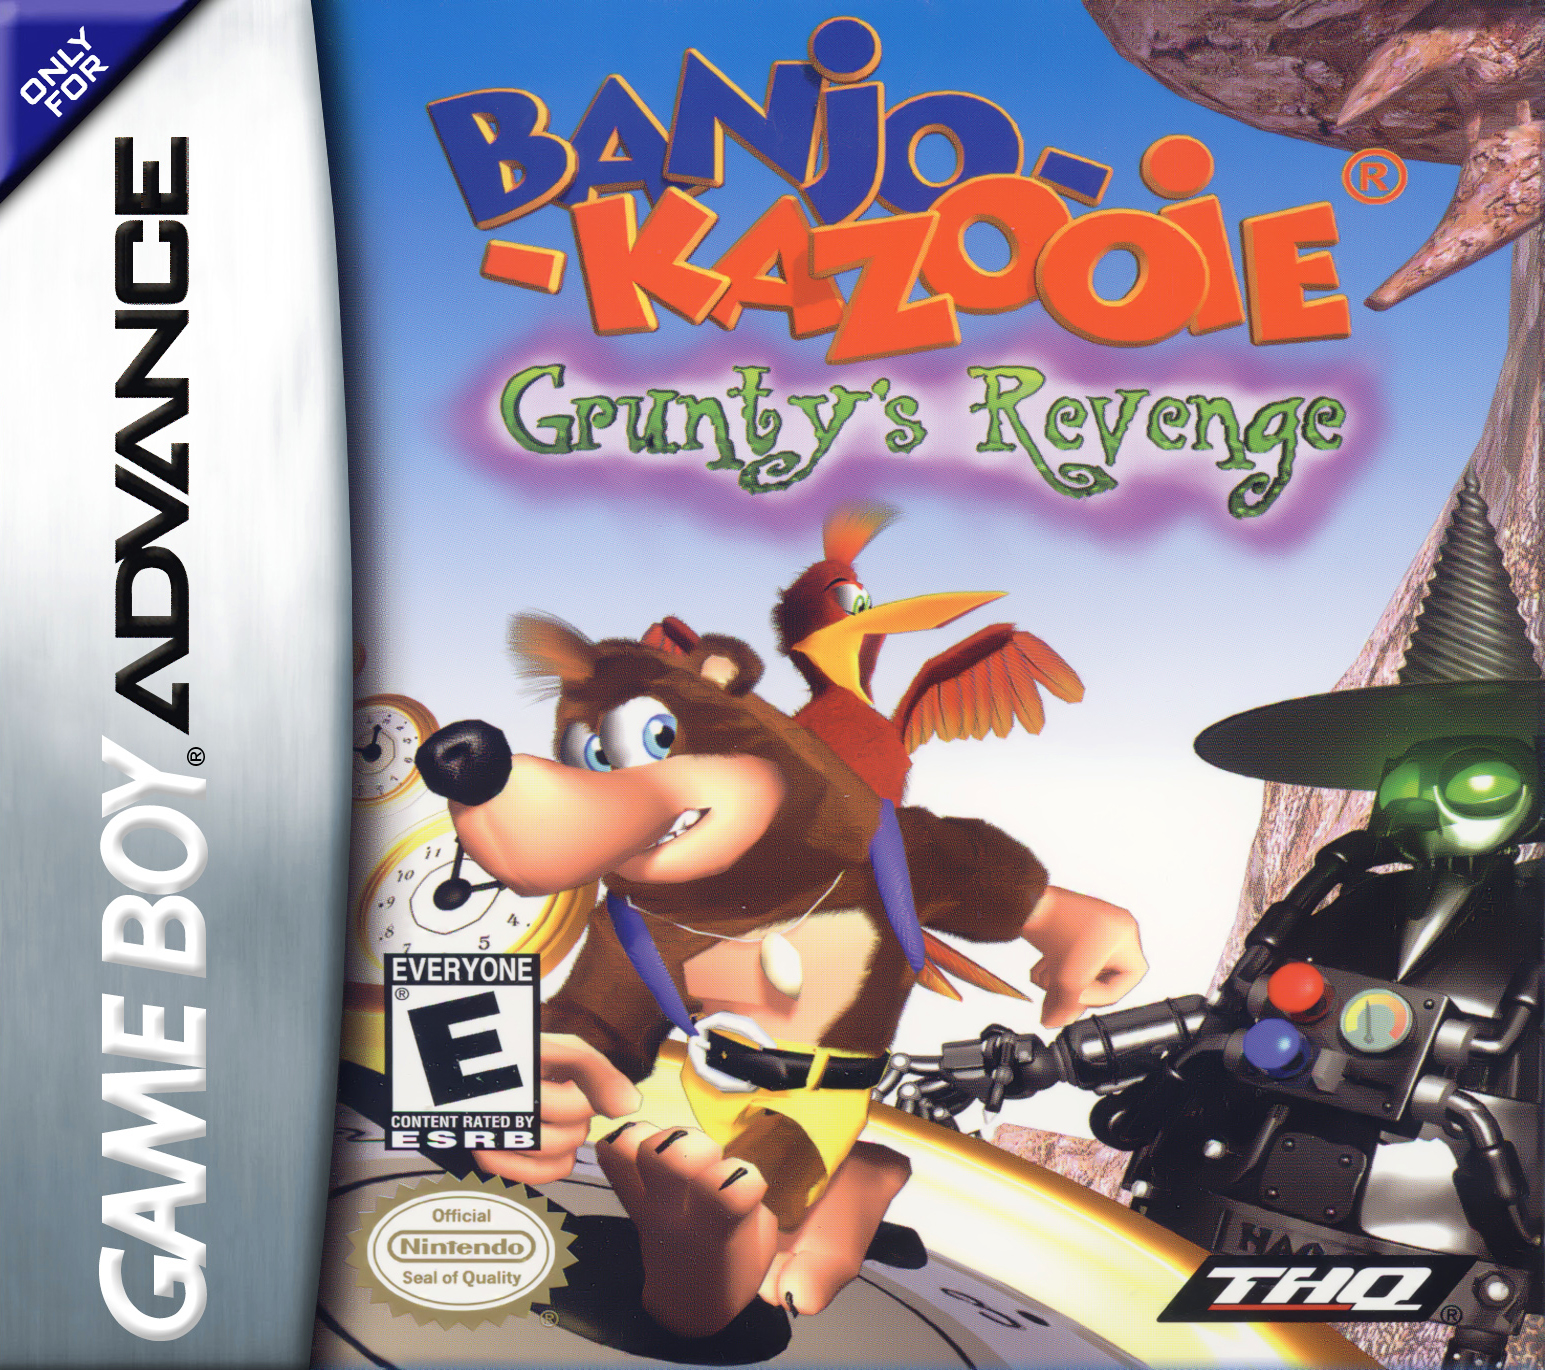 Banjo-Kazooie Gruntys Revenge Banjo-Kazooie Wiki Fandom